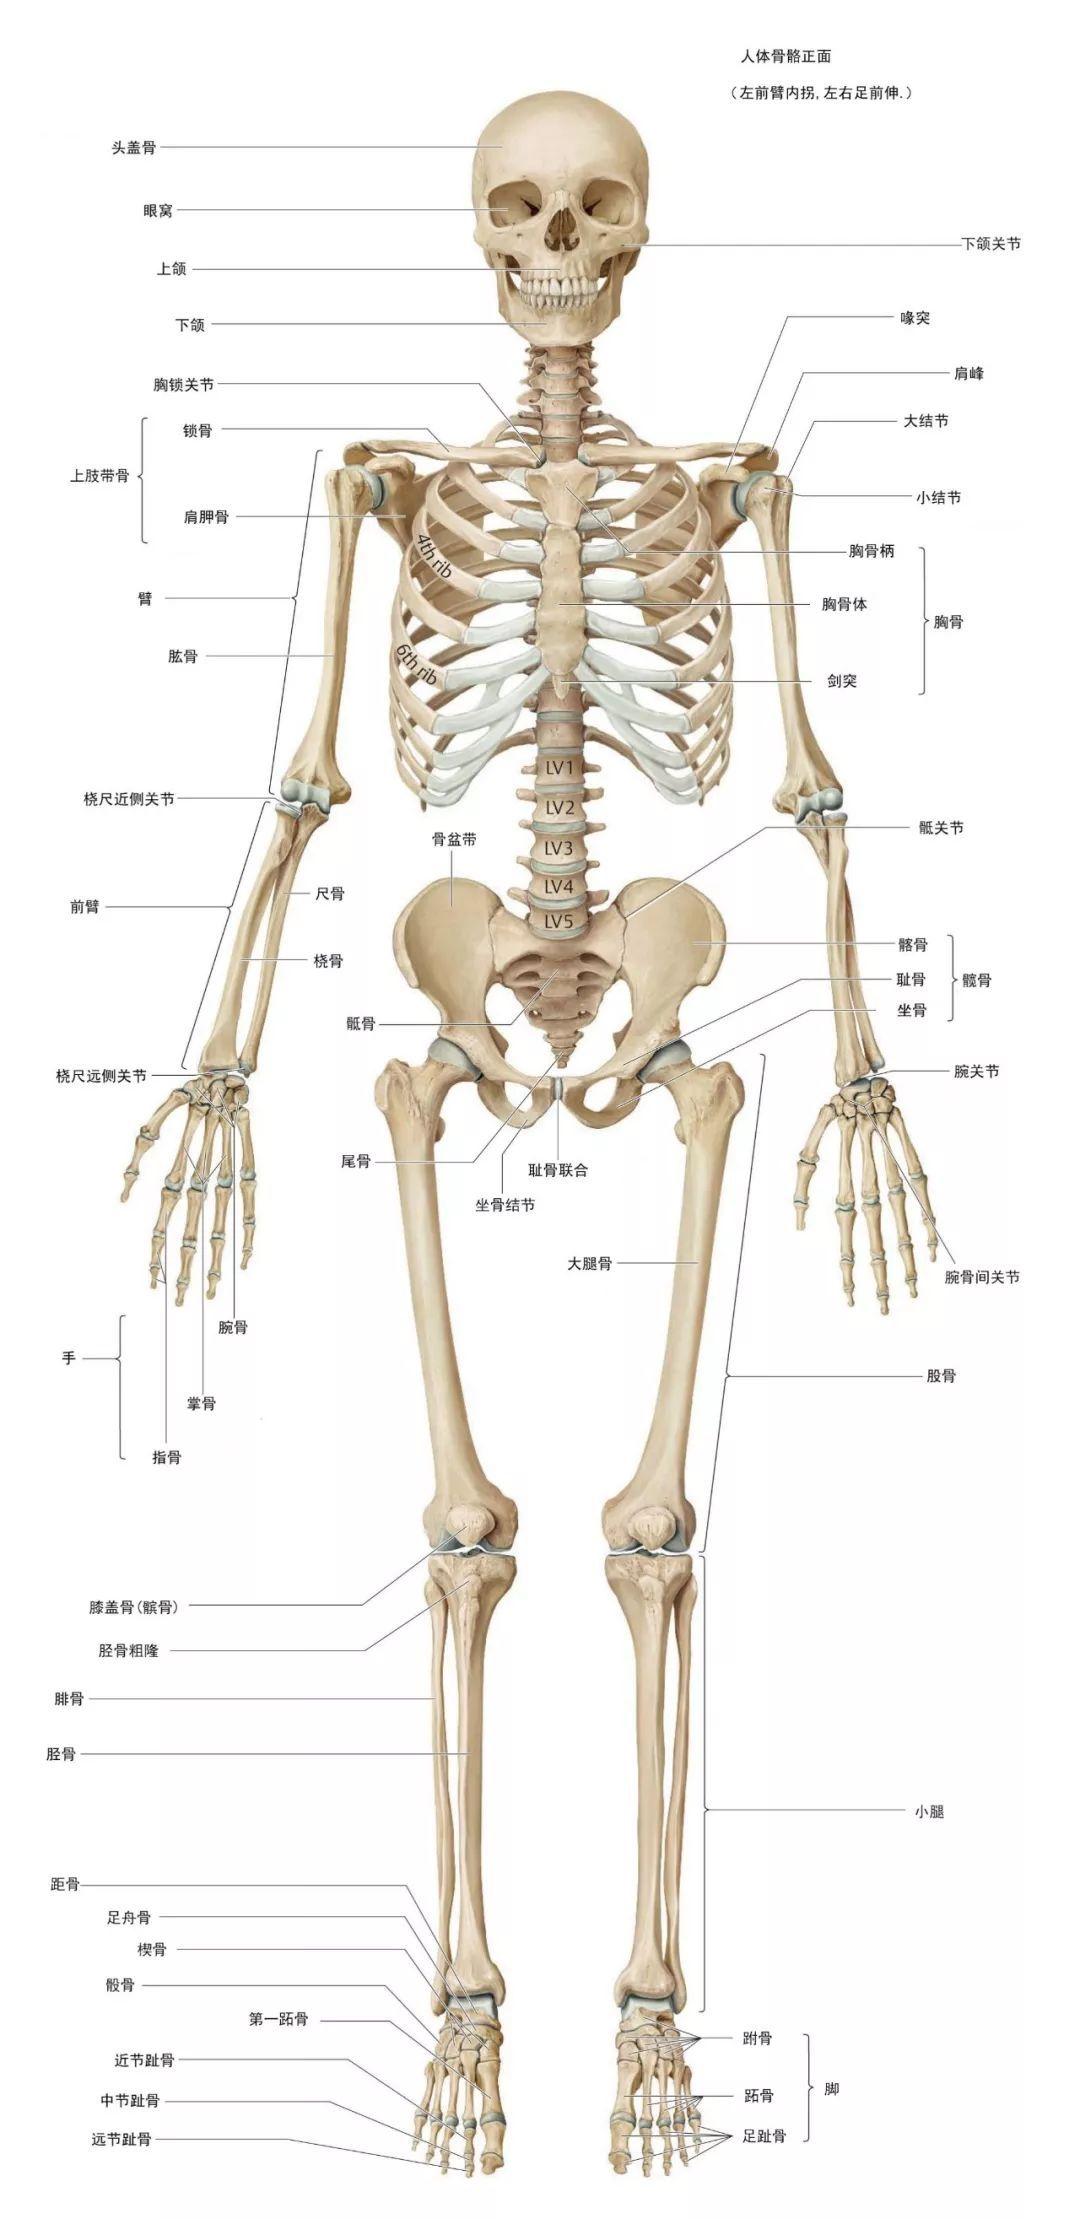 哪里有高清的人体解剖学图片? - 知乎